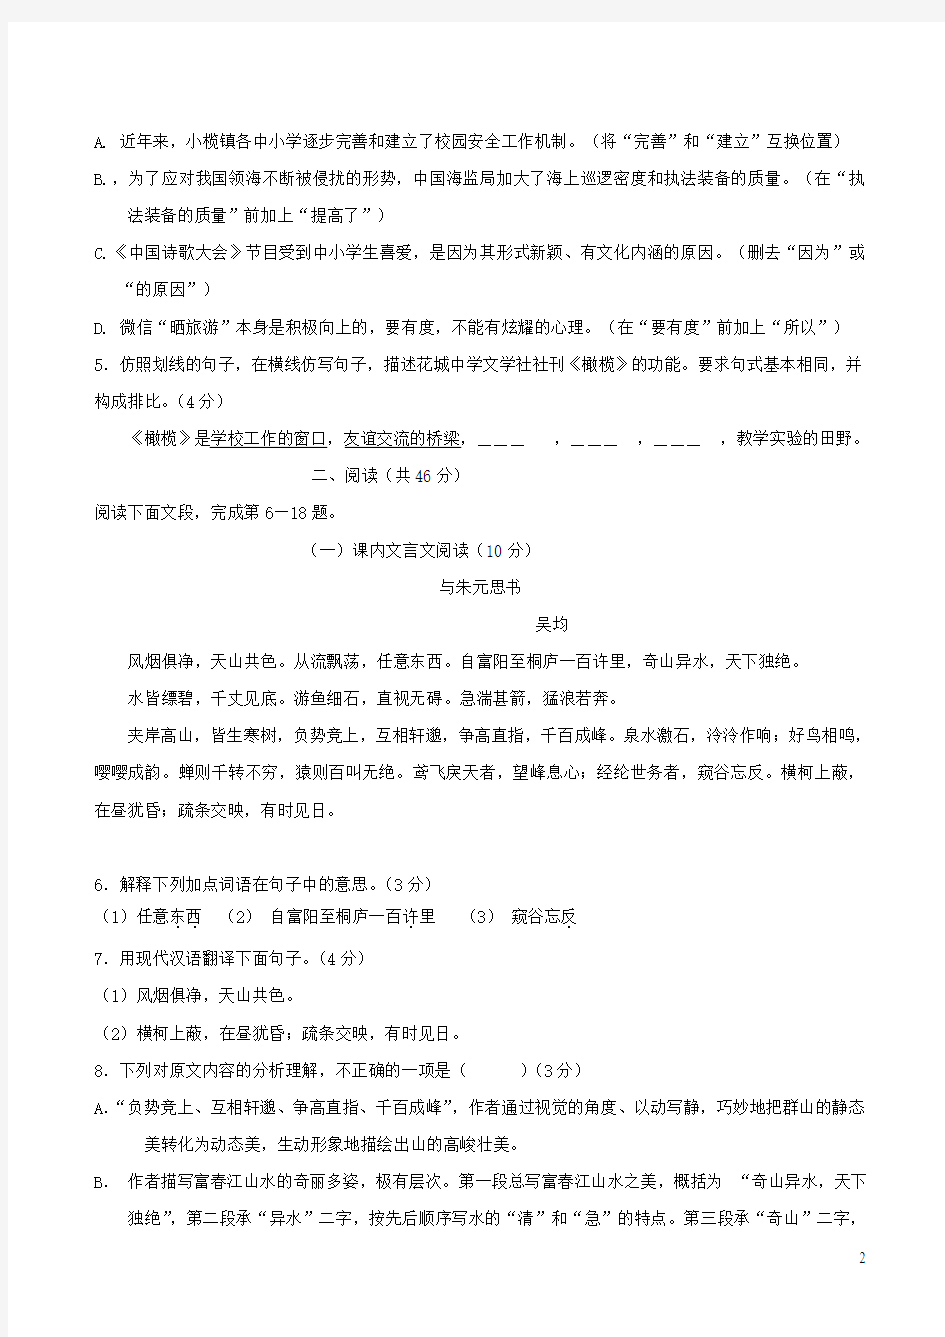 广东省2019年中考语文模拟试题(二)及答案